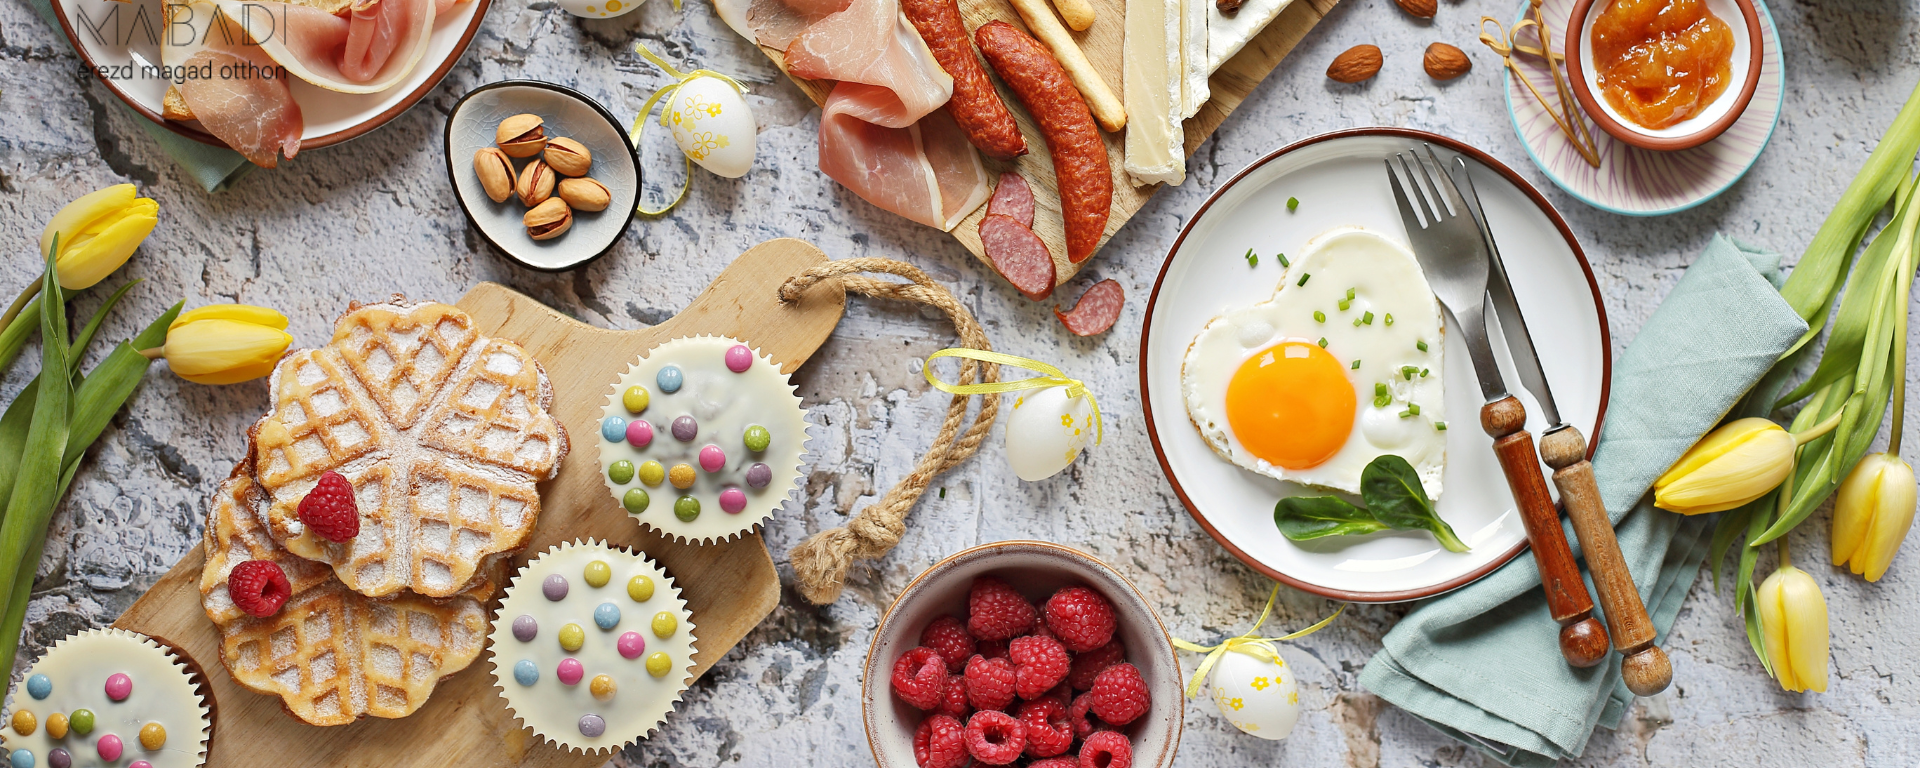 Húsvéti finomságok – Mi kerüljön az asztalra?